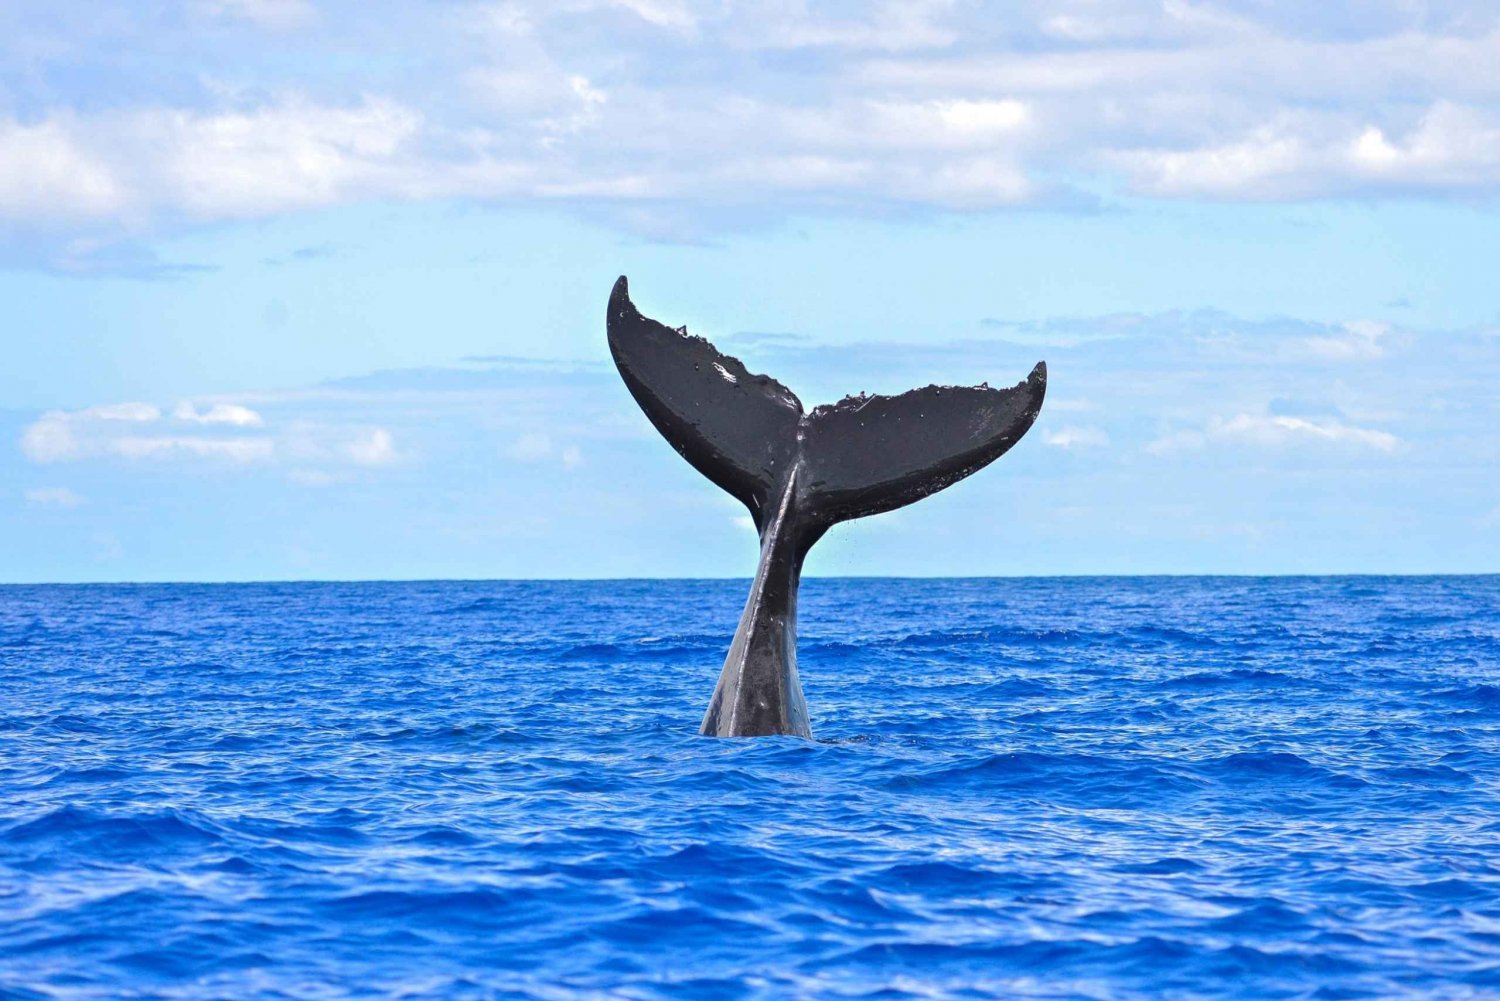 Sud de Maui : Croisière observation des baleines à bord de la Calypso